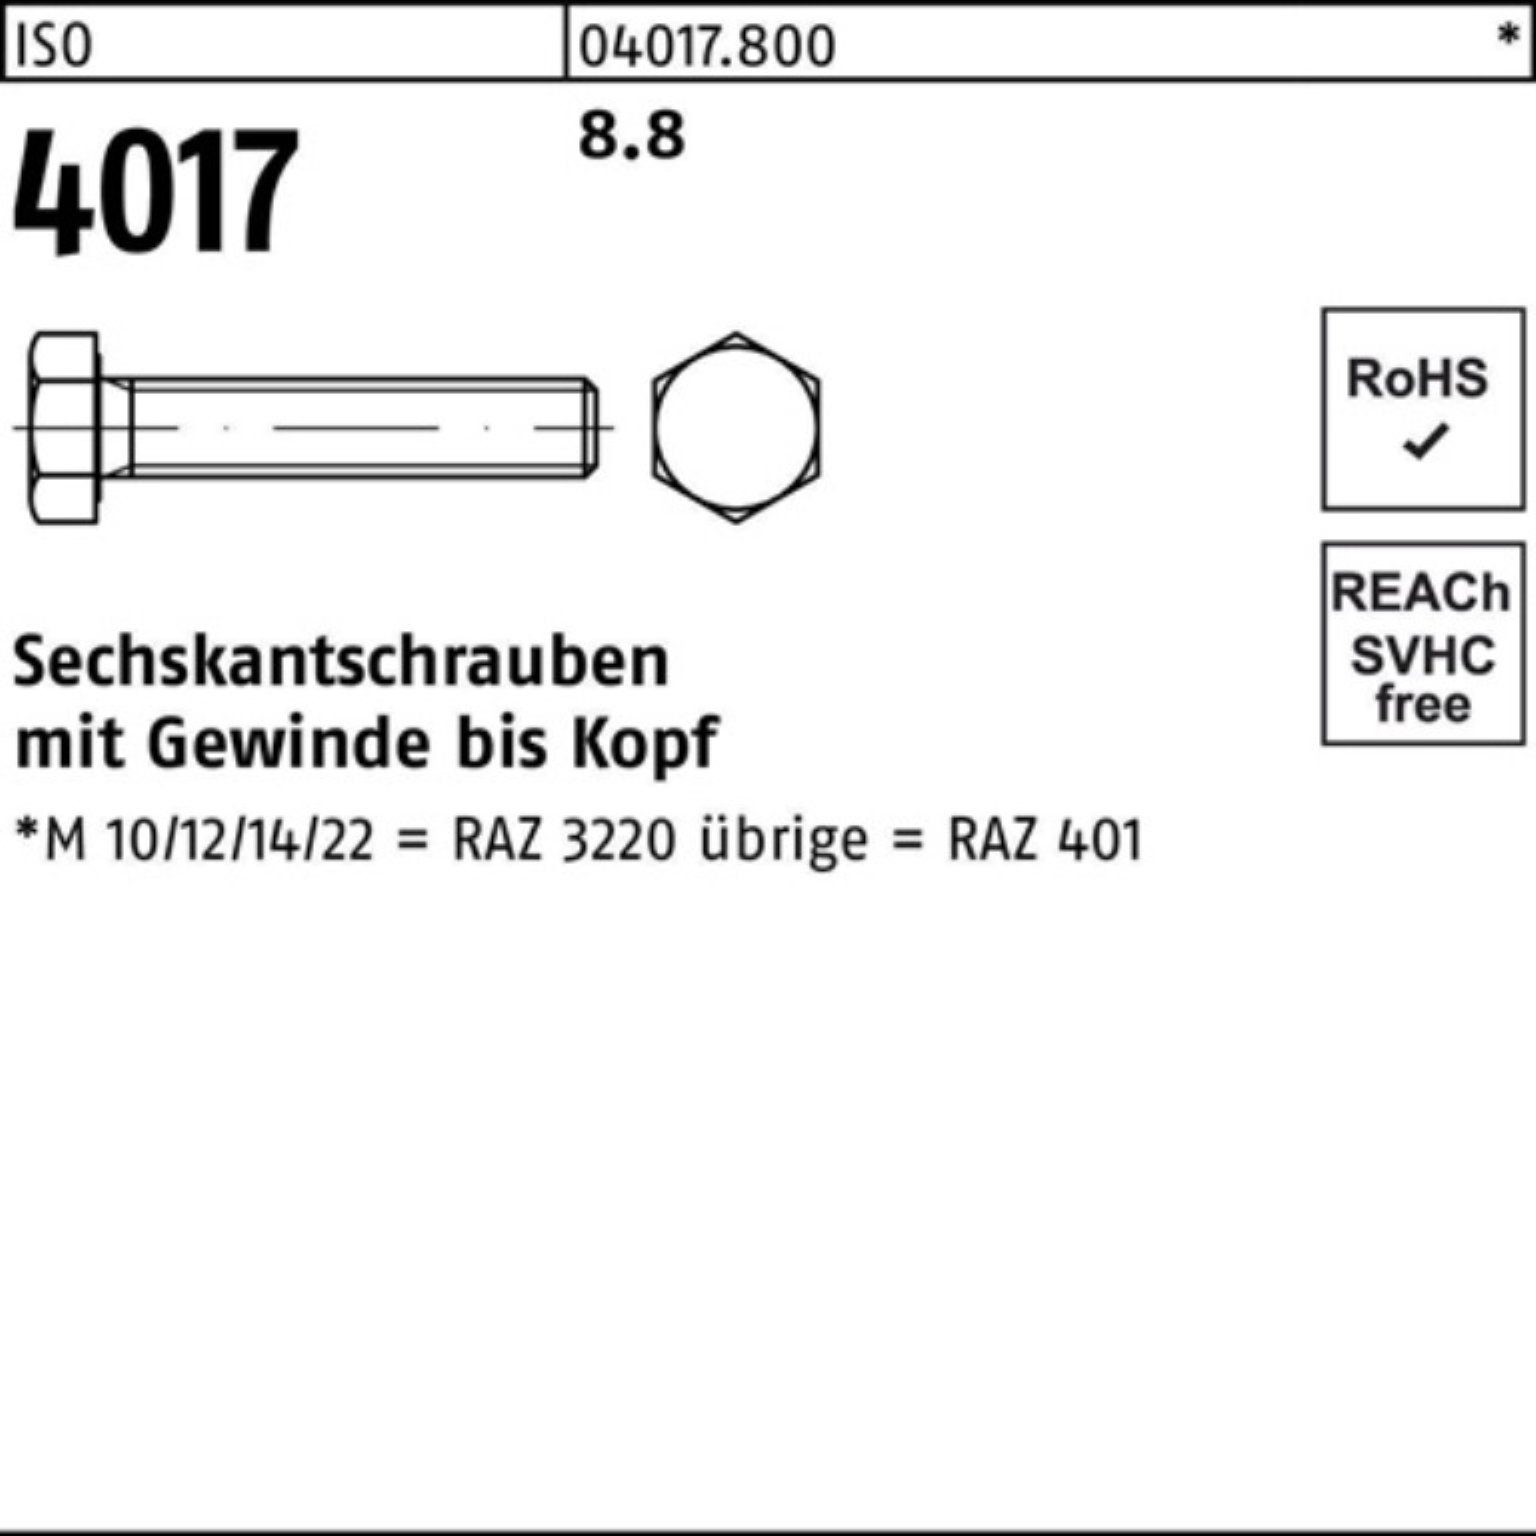 ISO Sechskantschraube 8.8 Bufab 100er 4017 Sechskantschraube VG 401 150 Pack M48x ISO Stück 1